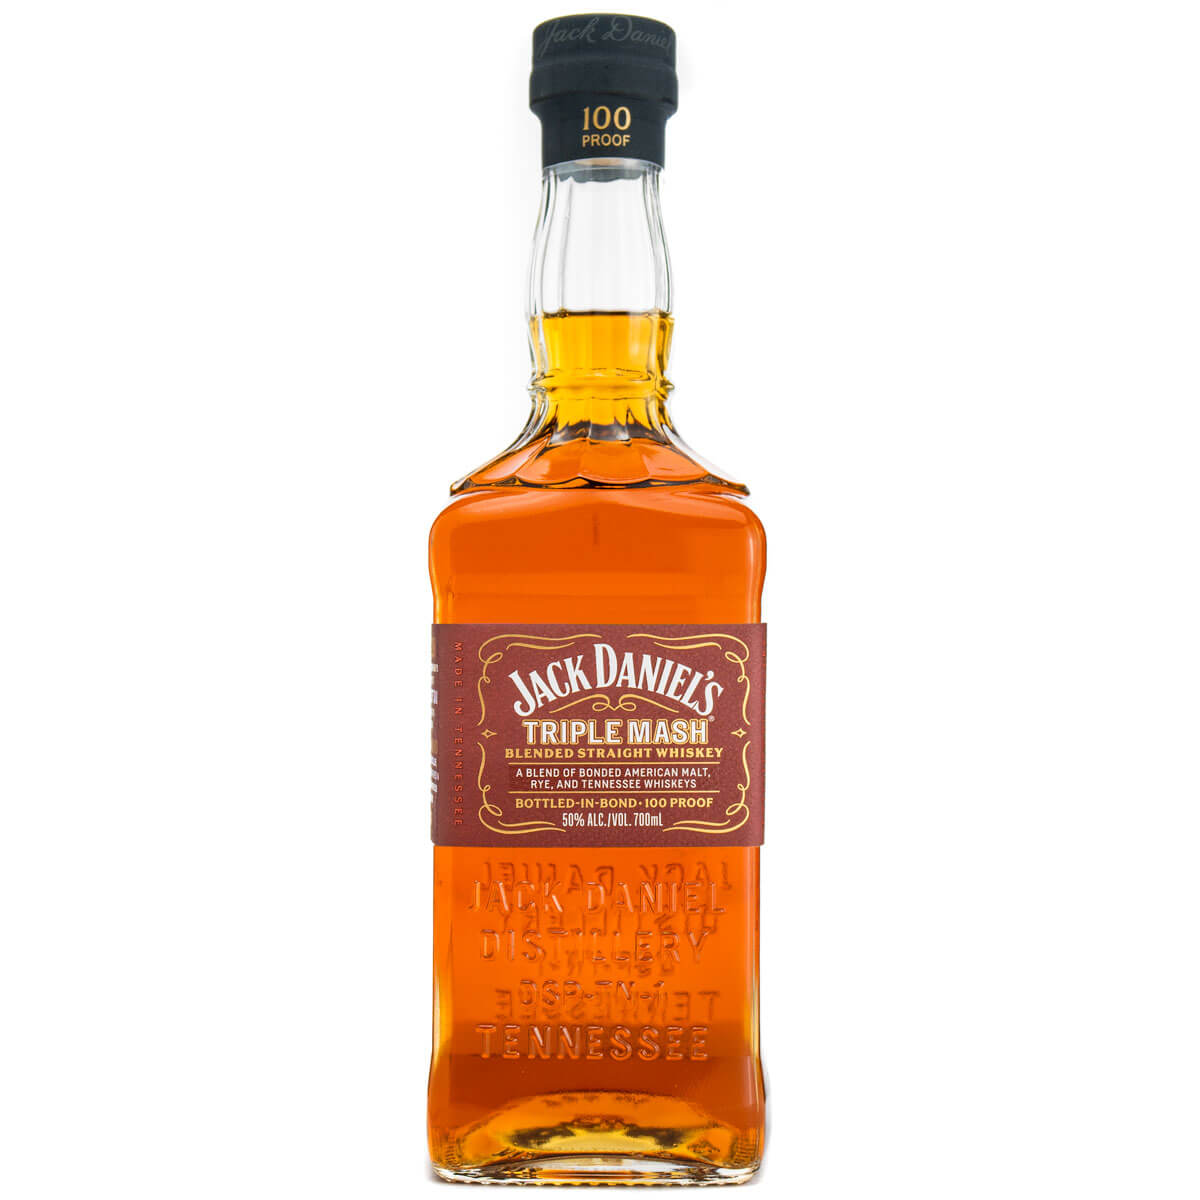 Jack Daniel’s Triple Mash Blended Straight Whiskey bottle